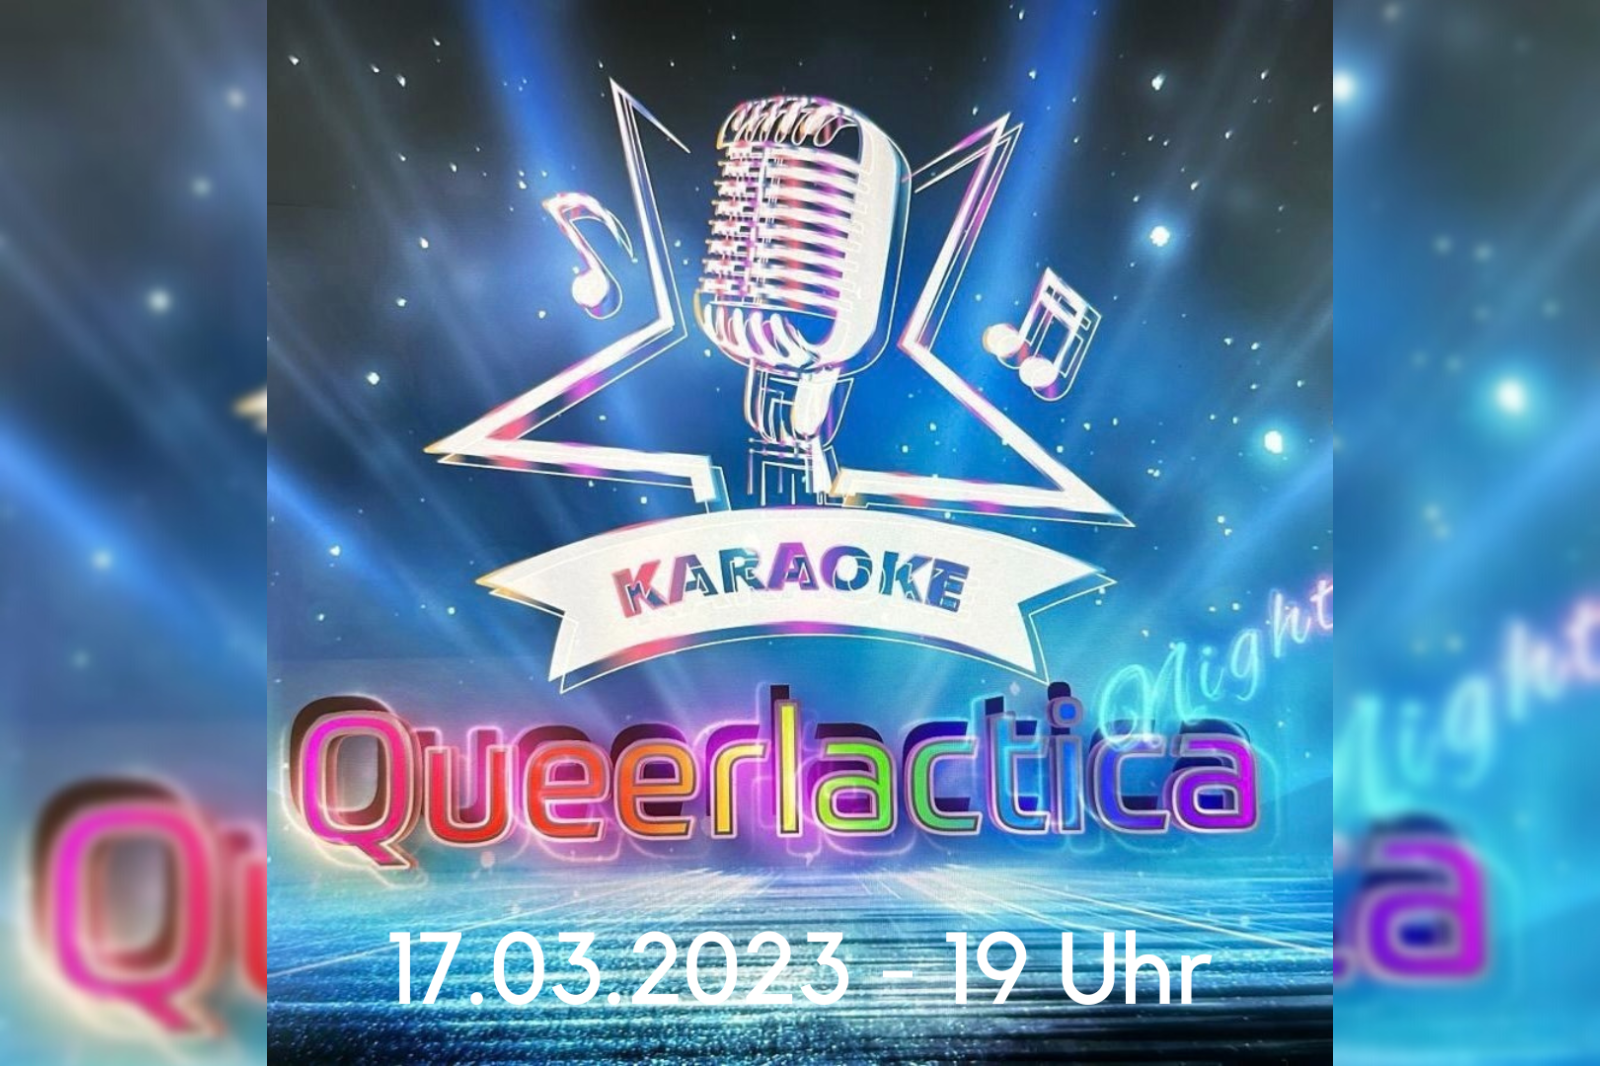 Das Bild zeigt ein Mikrophon vor blauen Hintergrund und kündigt eine neue Karaoke-Party am 17.03.2023 ab 19 Uhr im QZM an.